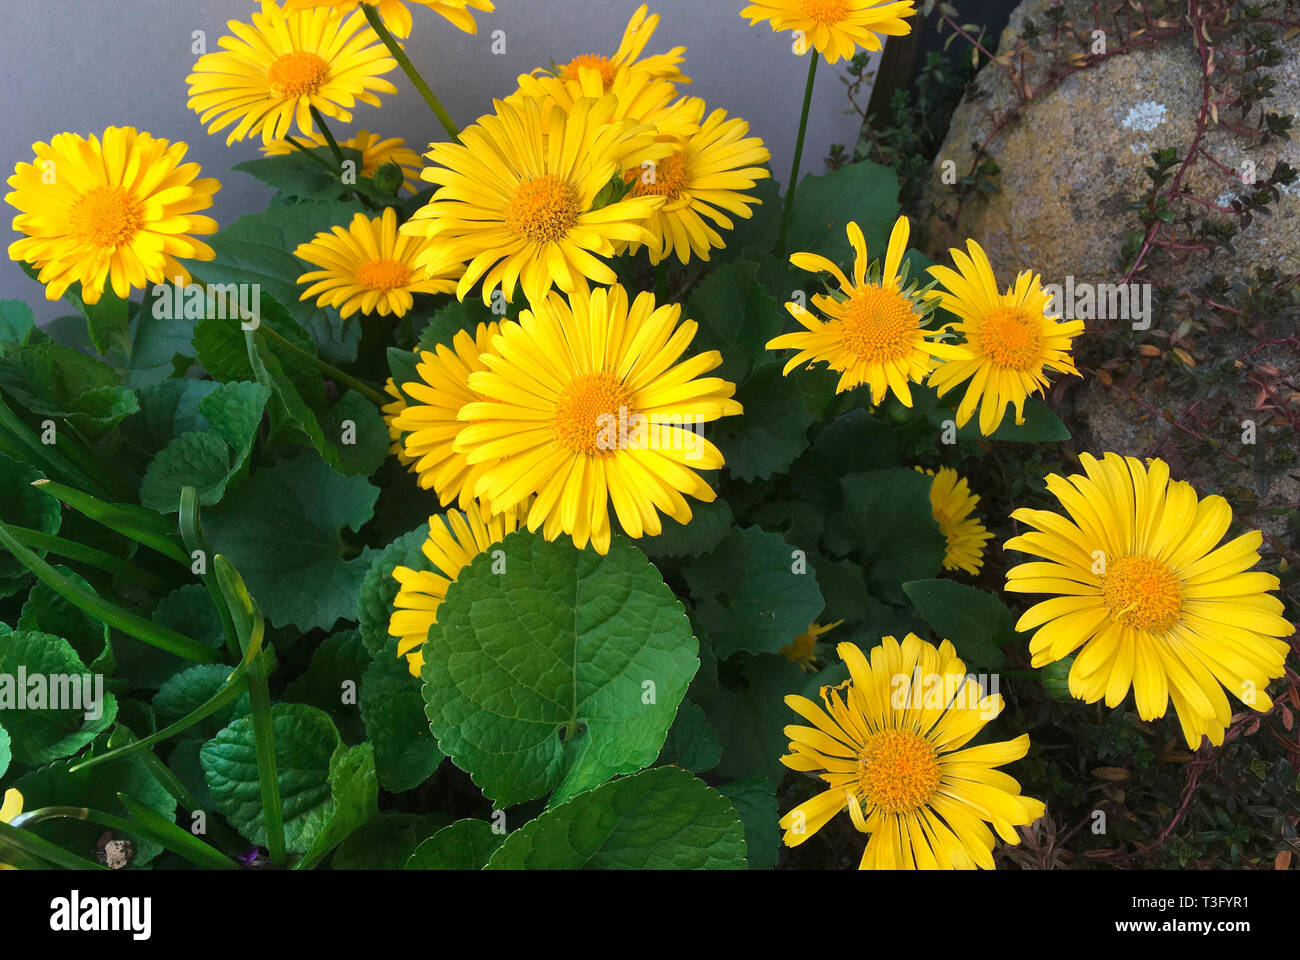 Flowering plants Doronicum orientale in a garden in Berlin - Germany. Stock Photo